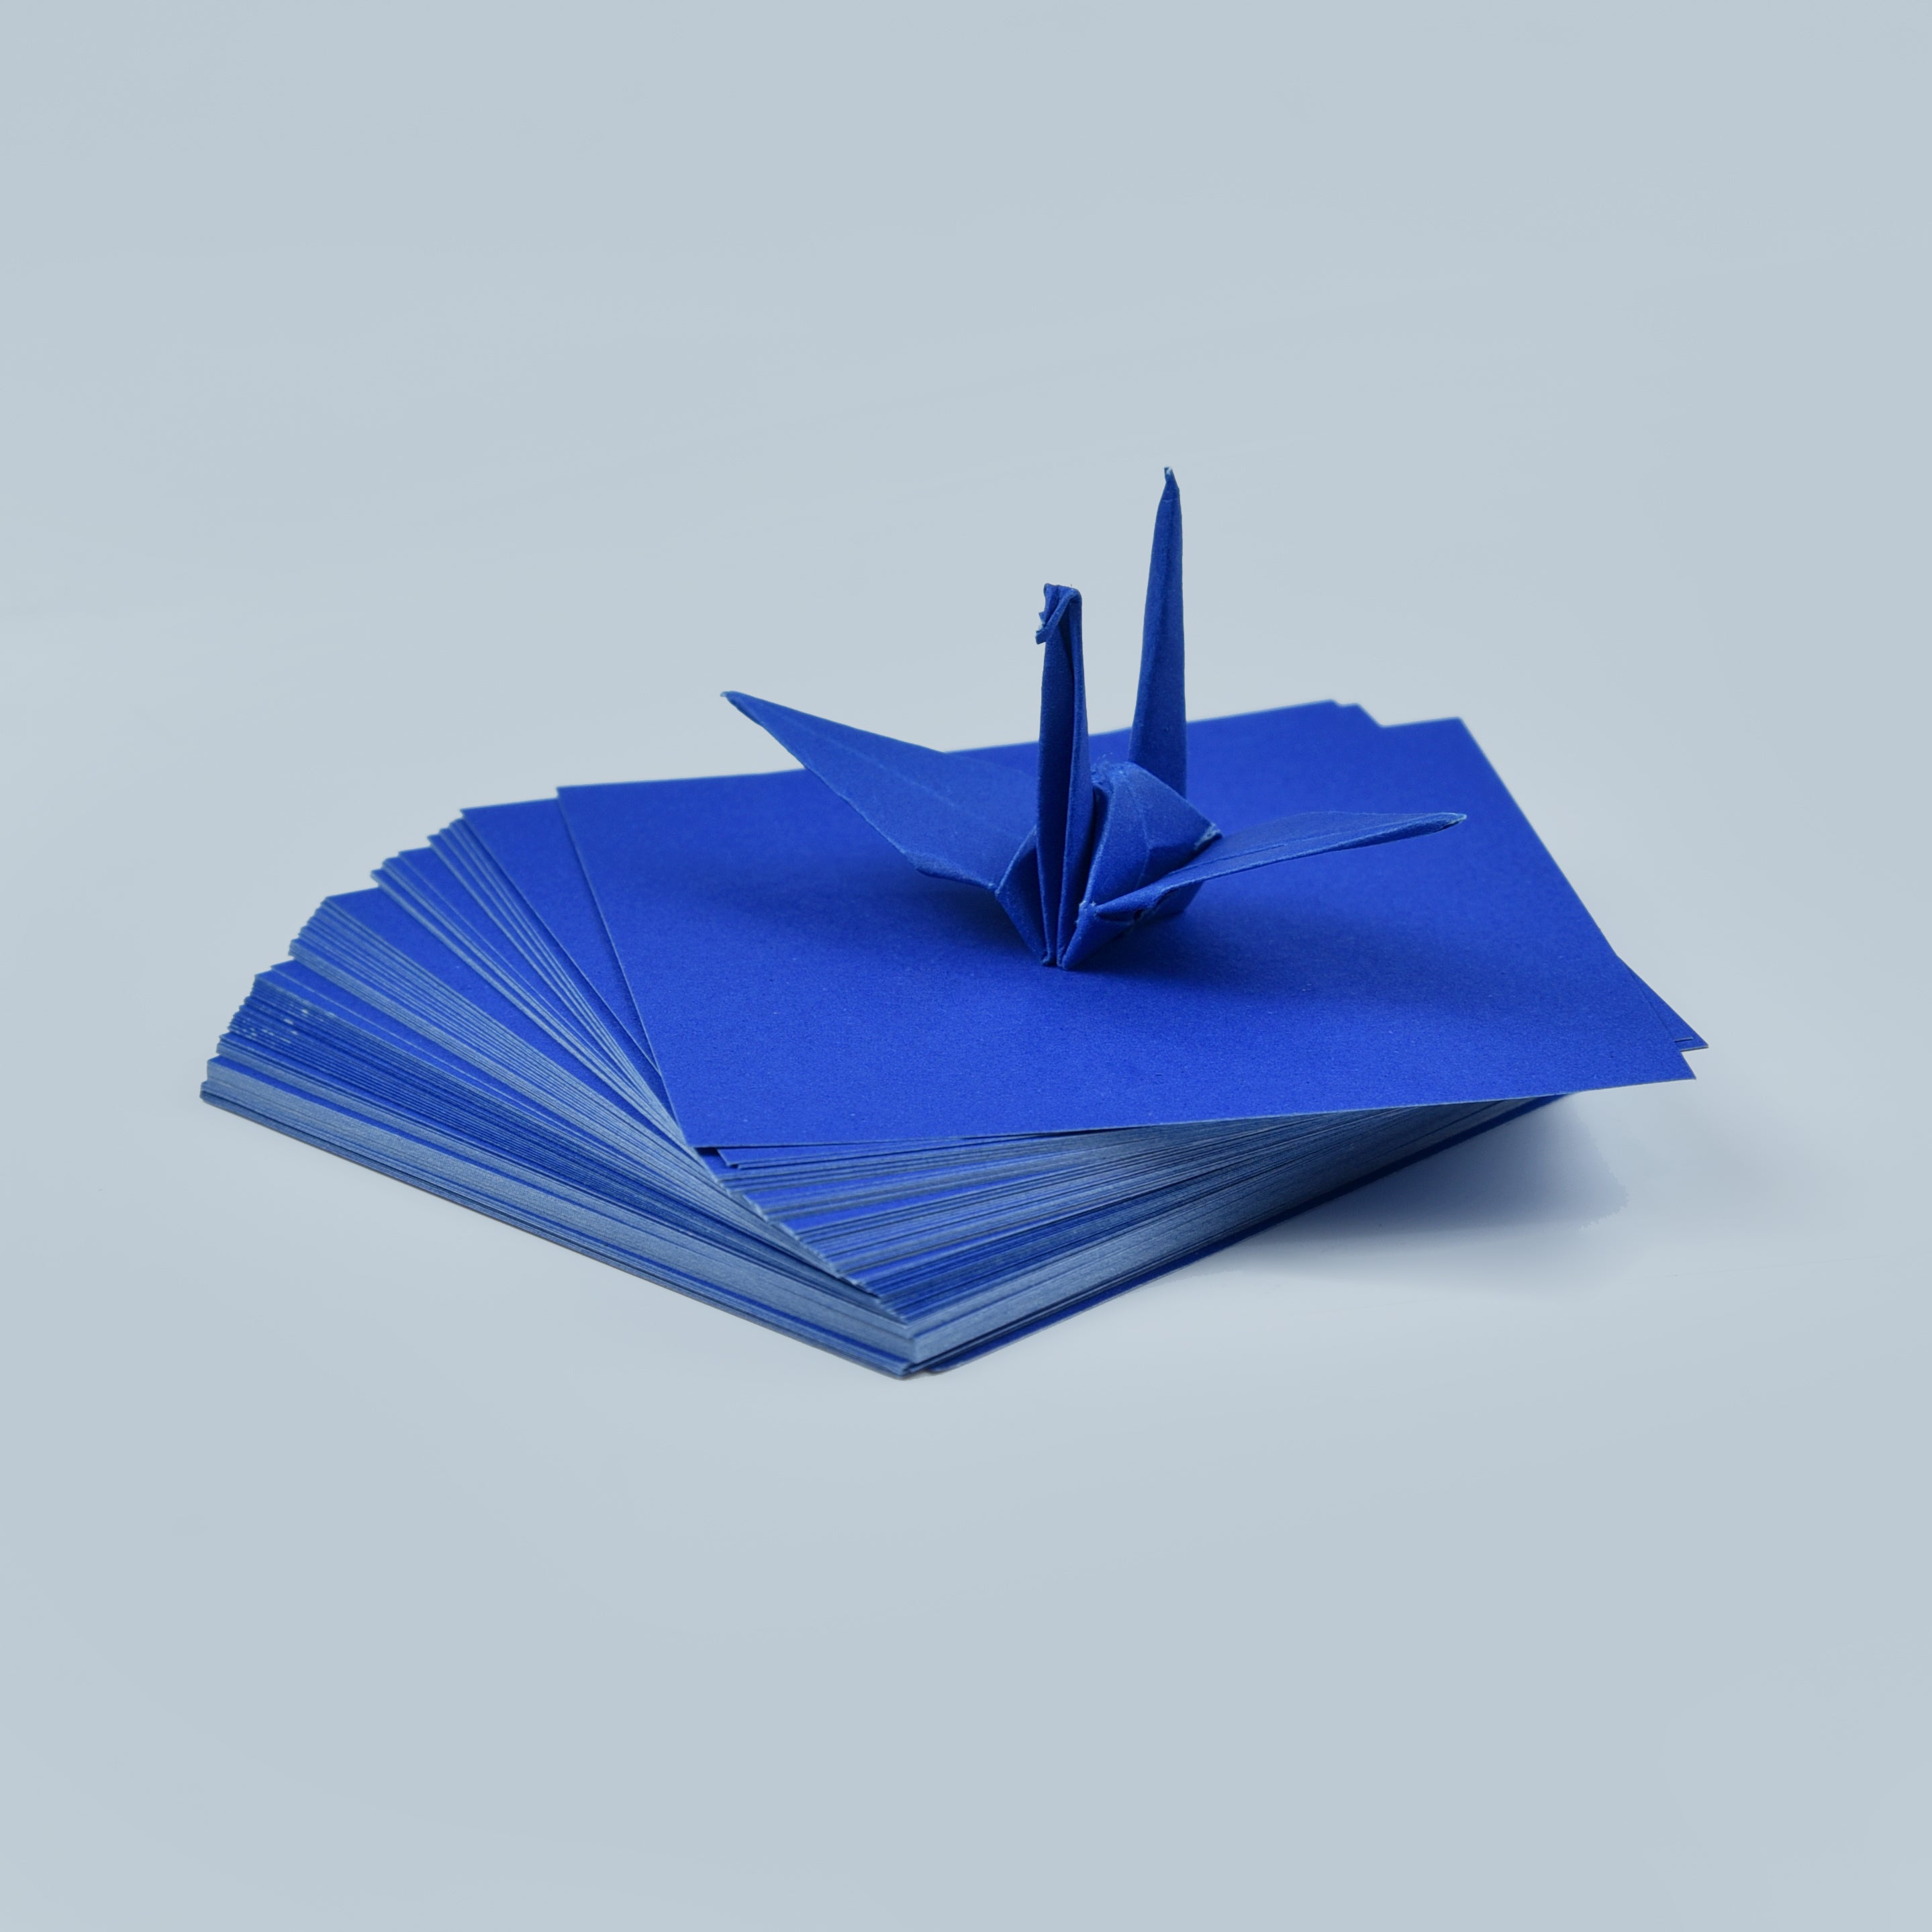 100 fogli di carta origami - 3x3 pollici - Confezione di carta quadrata per piegare, gru origami e decorazioni - S20